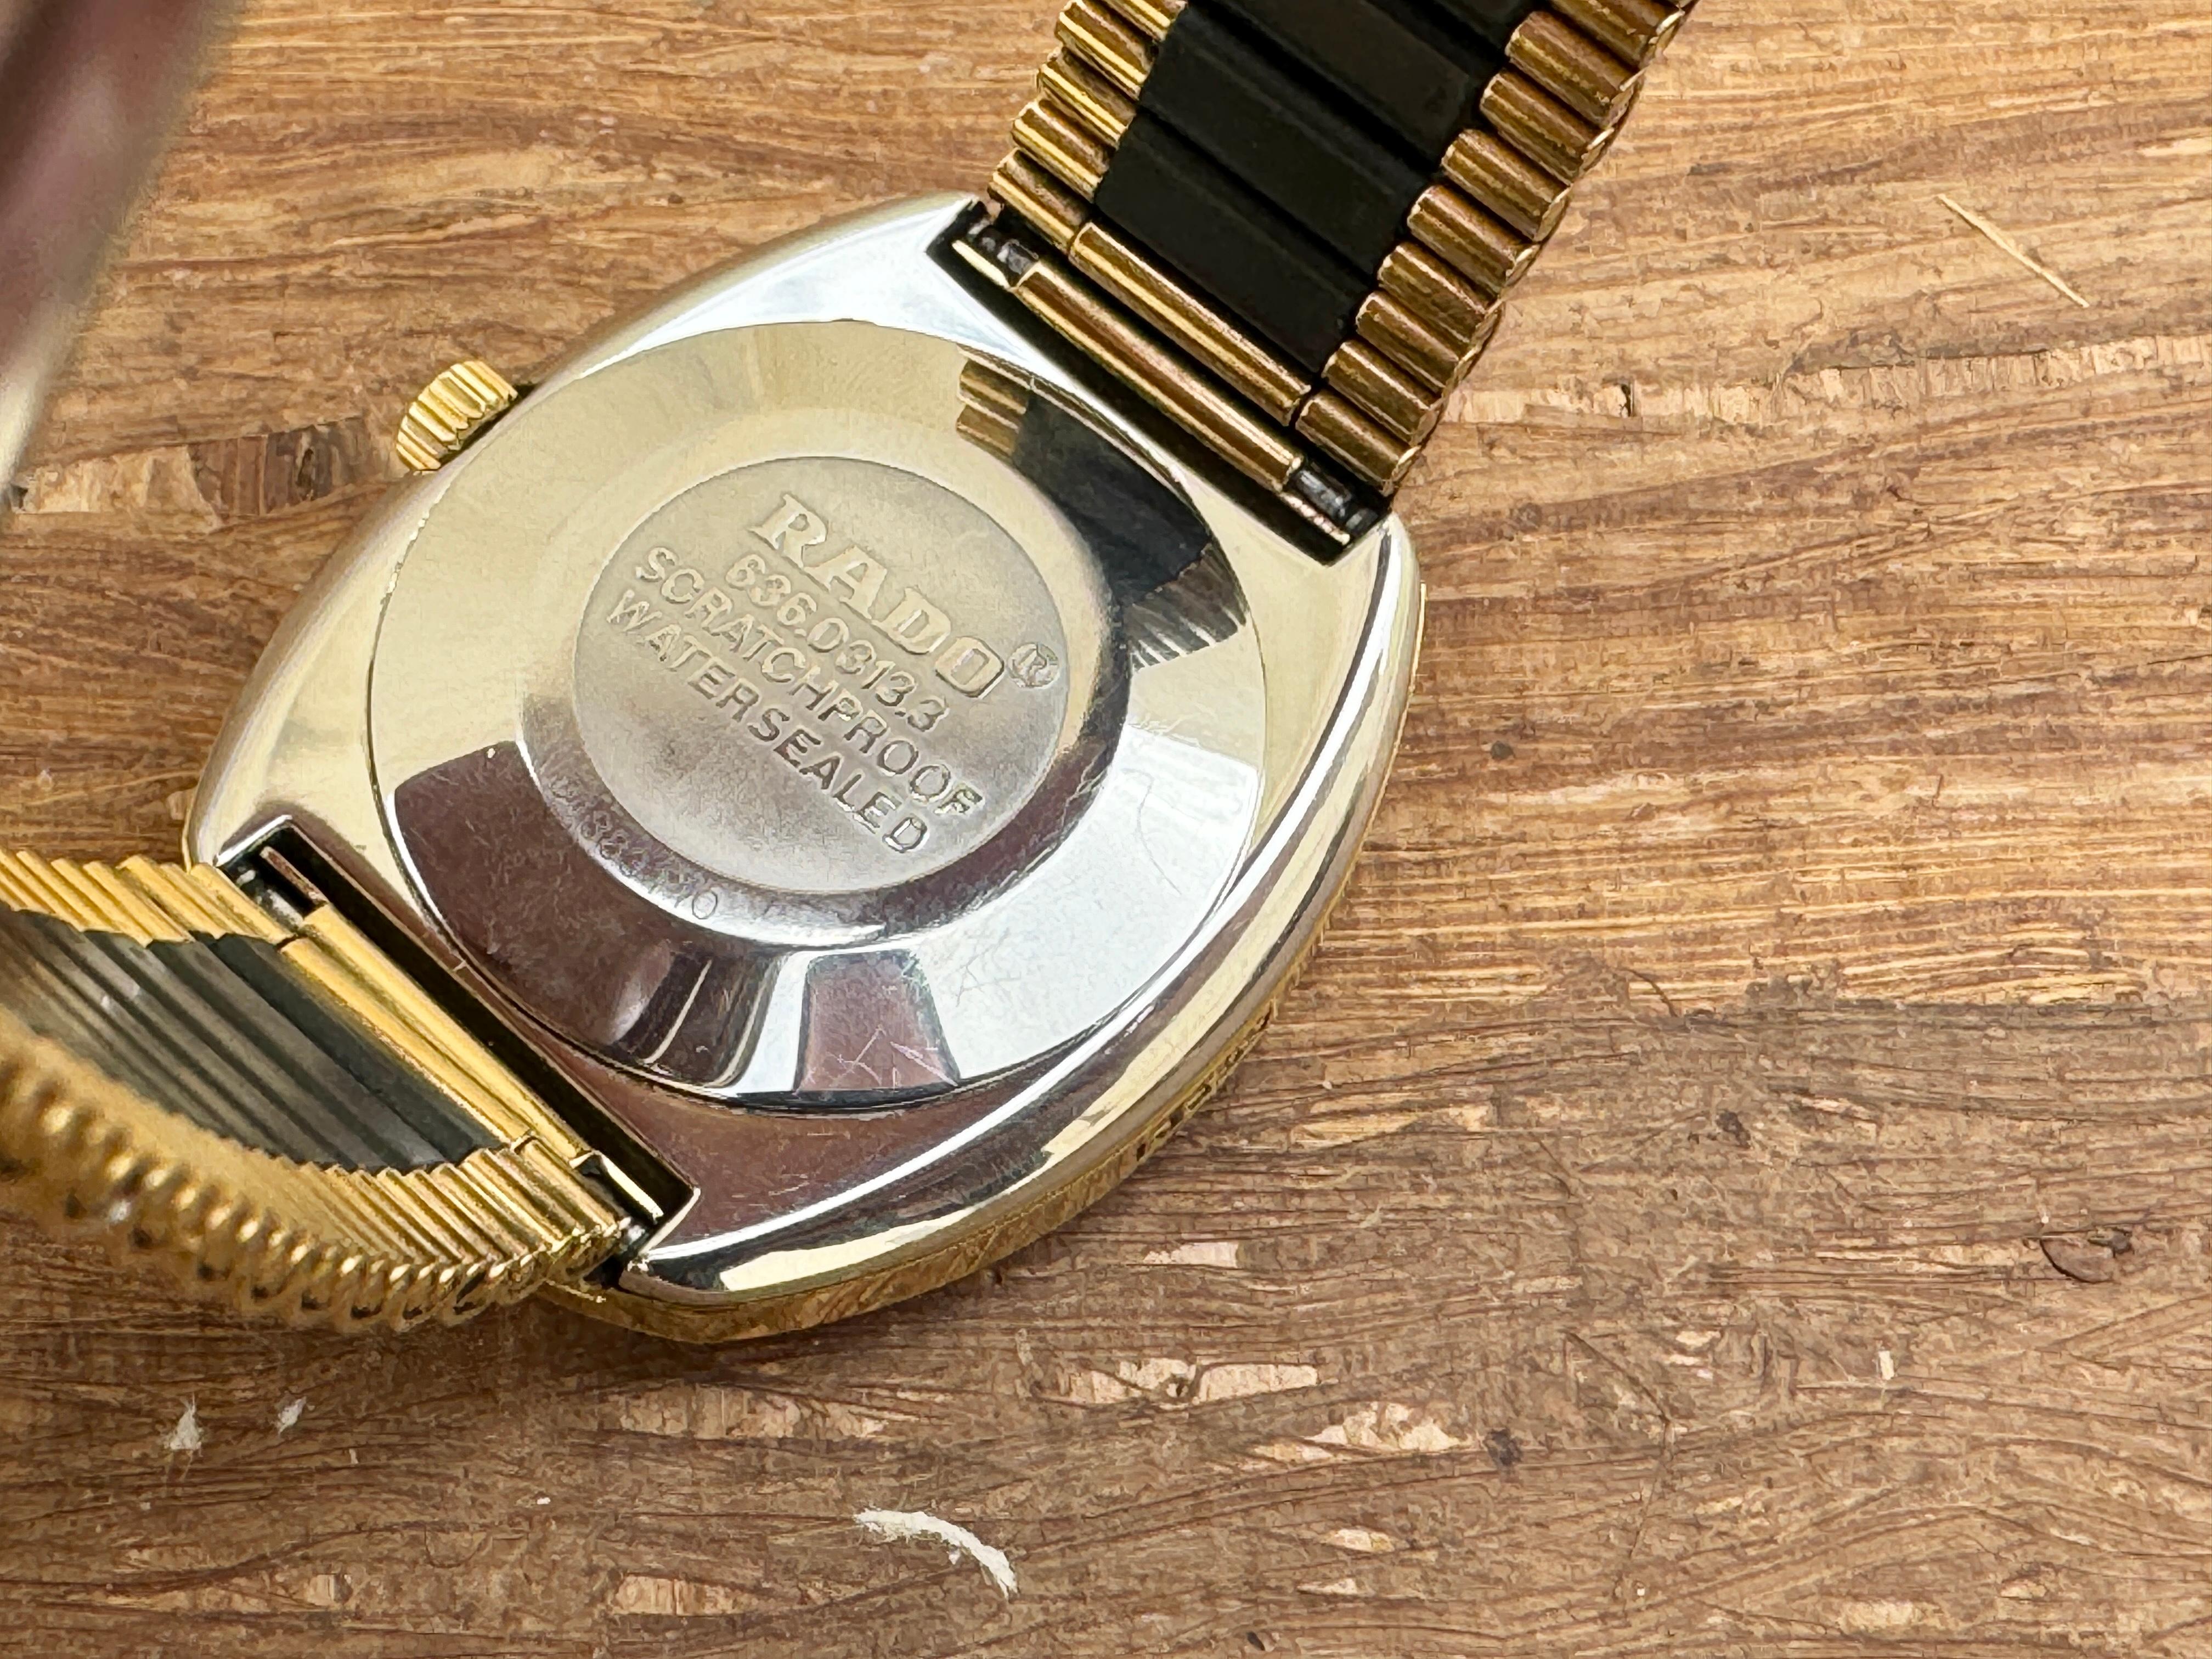 Rado Diastar 636.0313.3 Rare Dial Watch Boxed For Sale 3